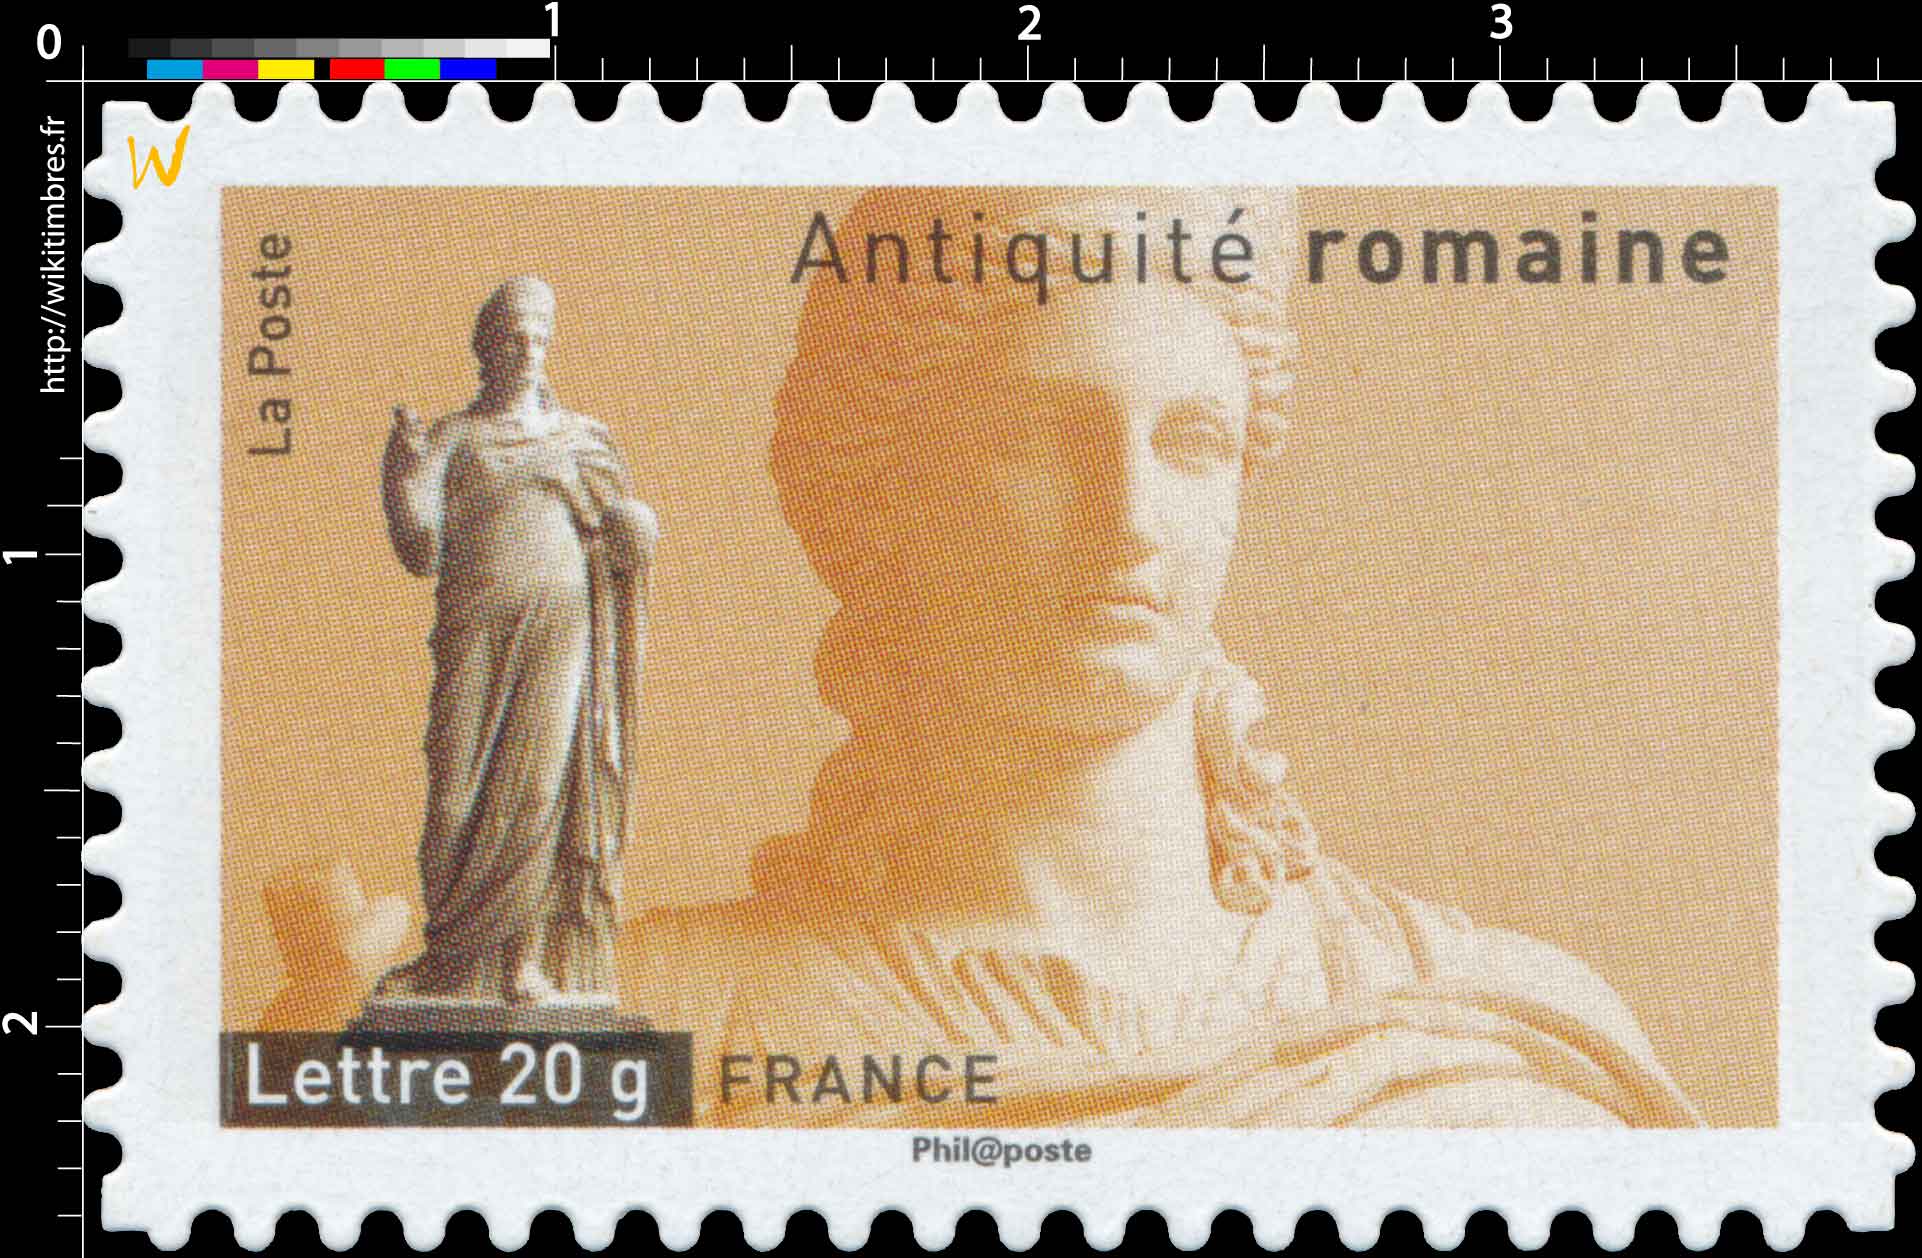 Antiquité romaine